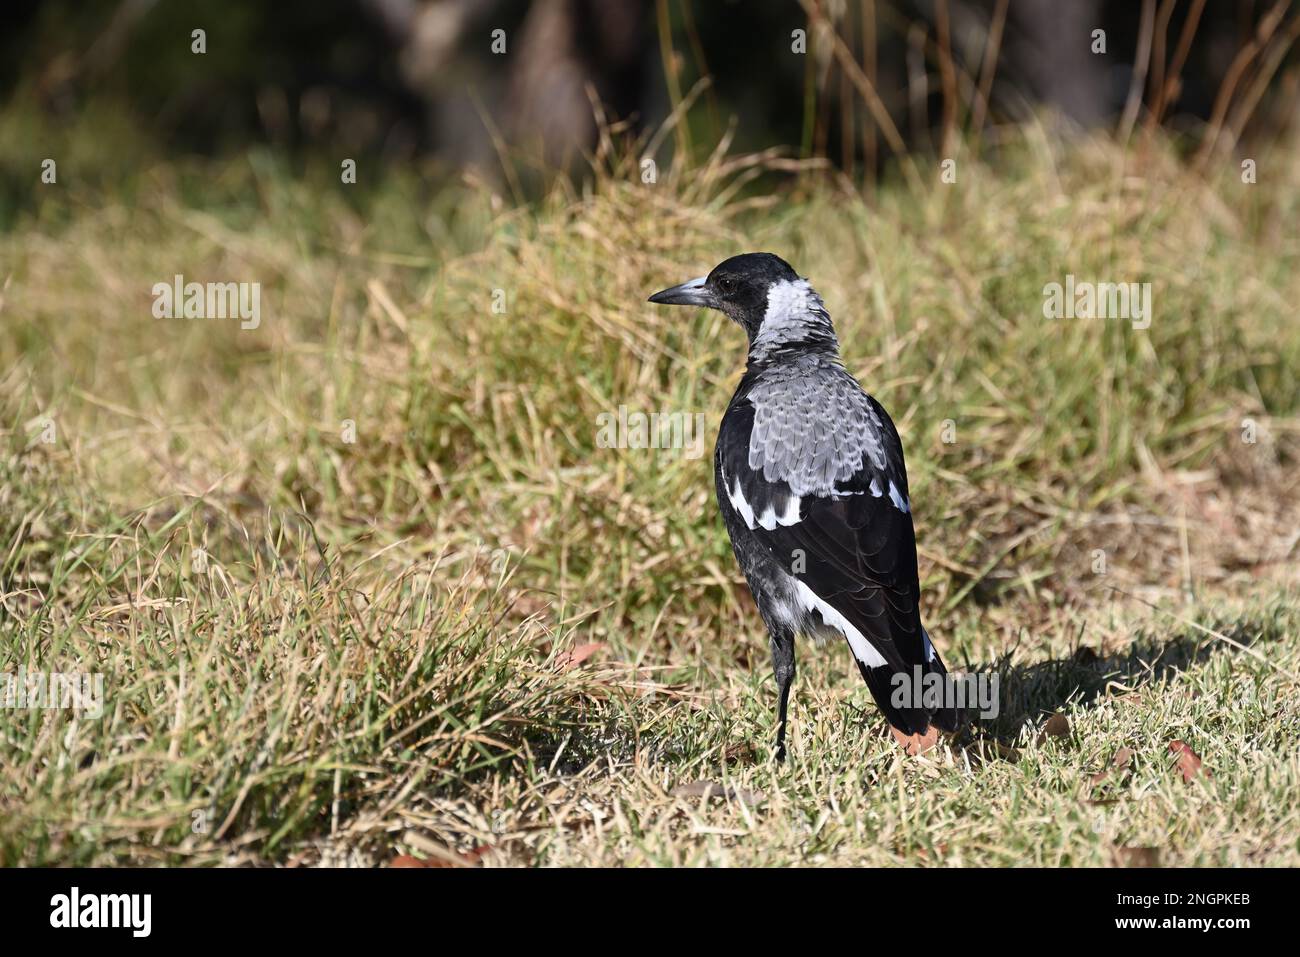 Magpie australienne vue de l'arrière comme elle se tient sur le sol dans une zone herbeuse, avec l'oiseau tournant sa tête vers la gauche pour regarder par-dessus son épaule Banque D'Images